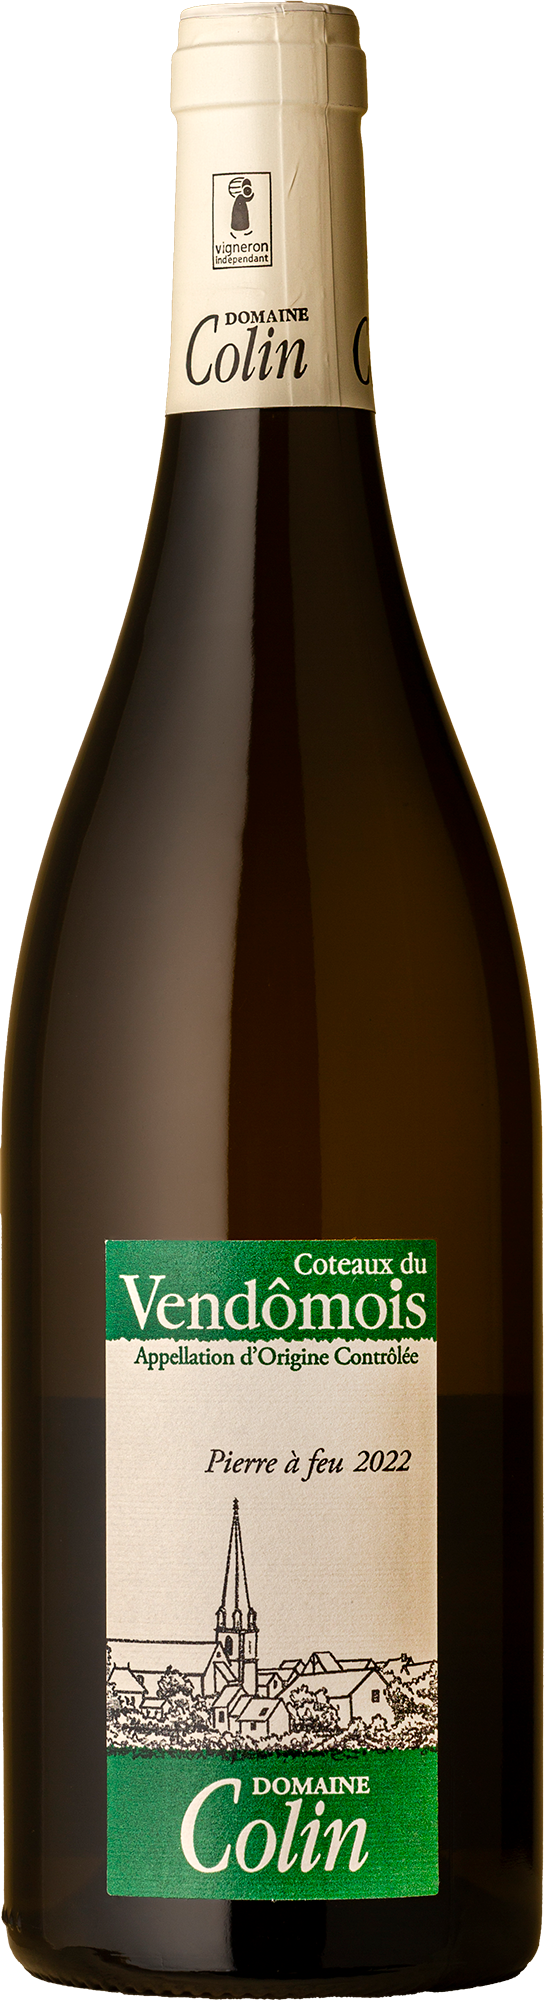 Domaine Patrice Colin - Pierre a Feu Chenin Blanc 2022 White Wine